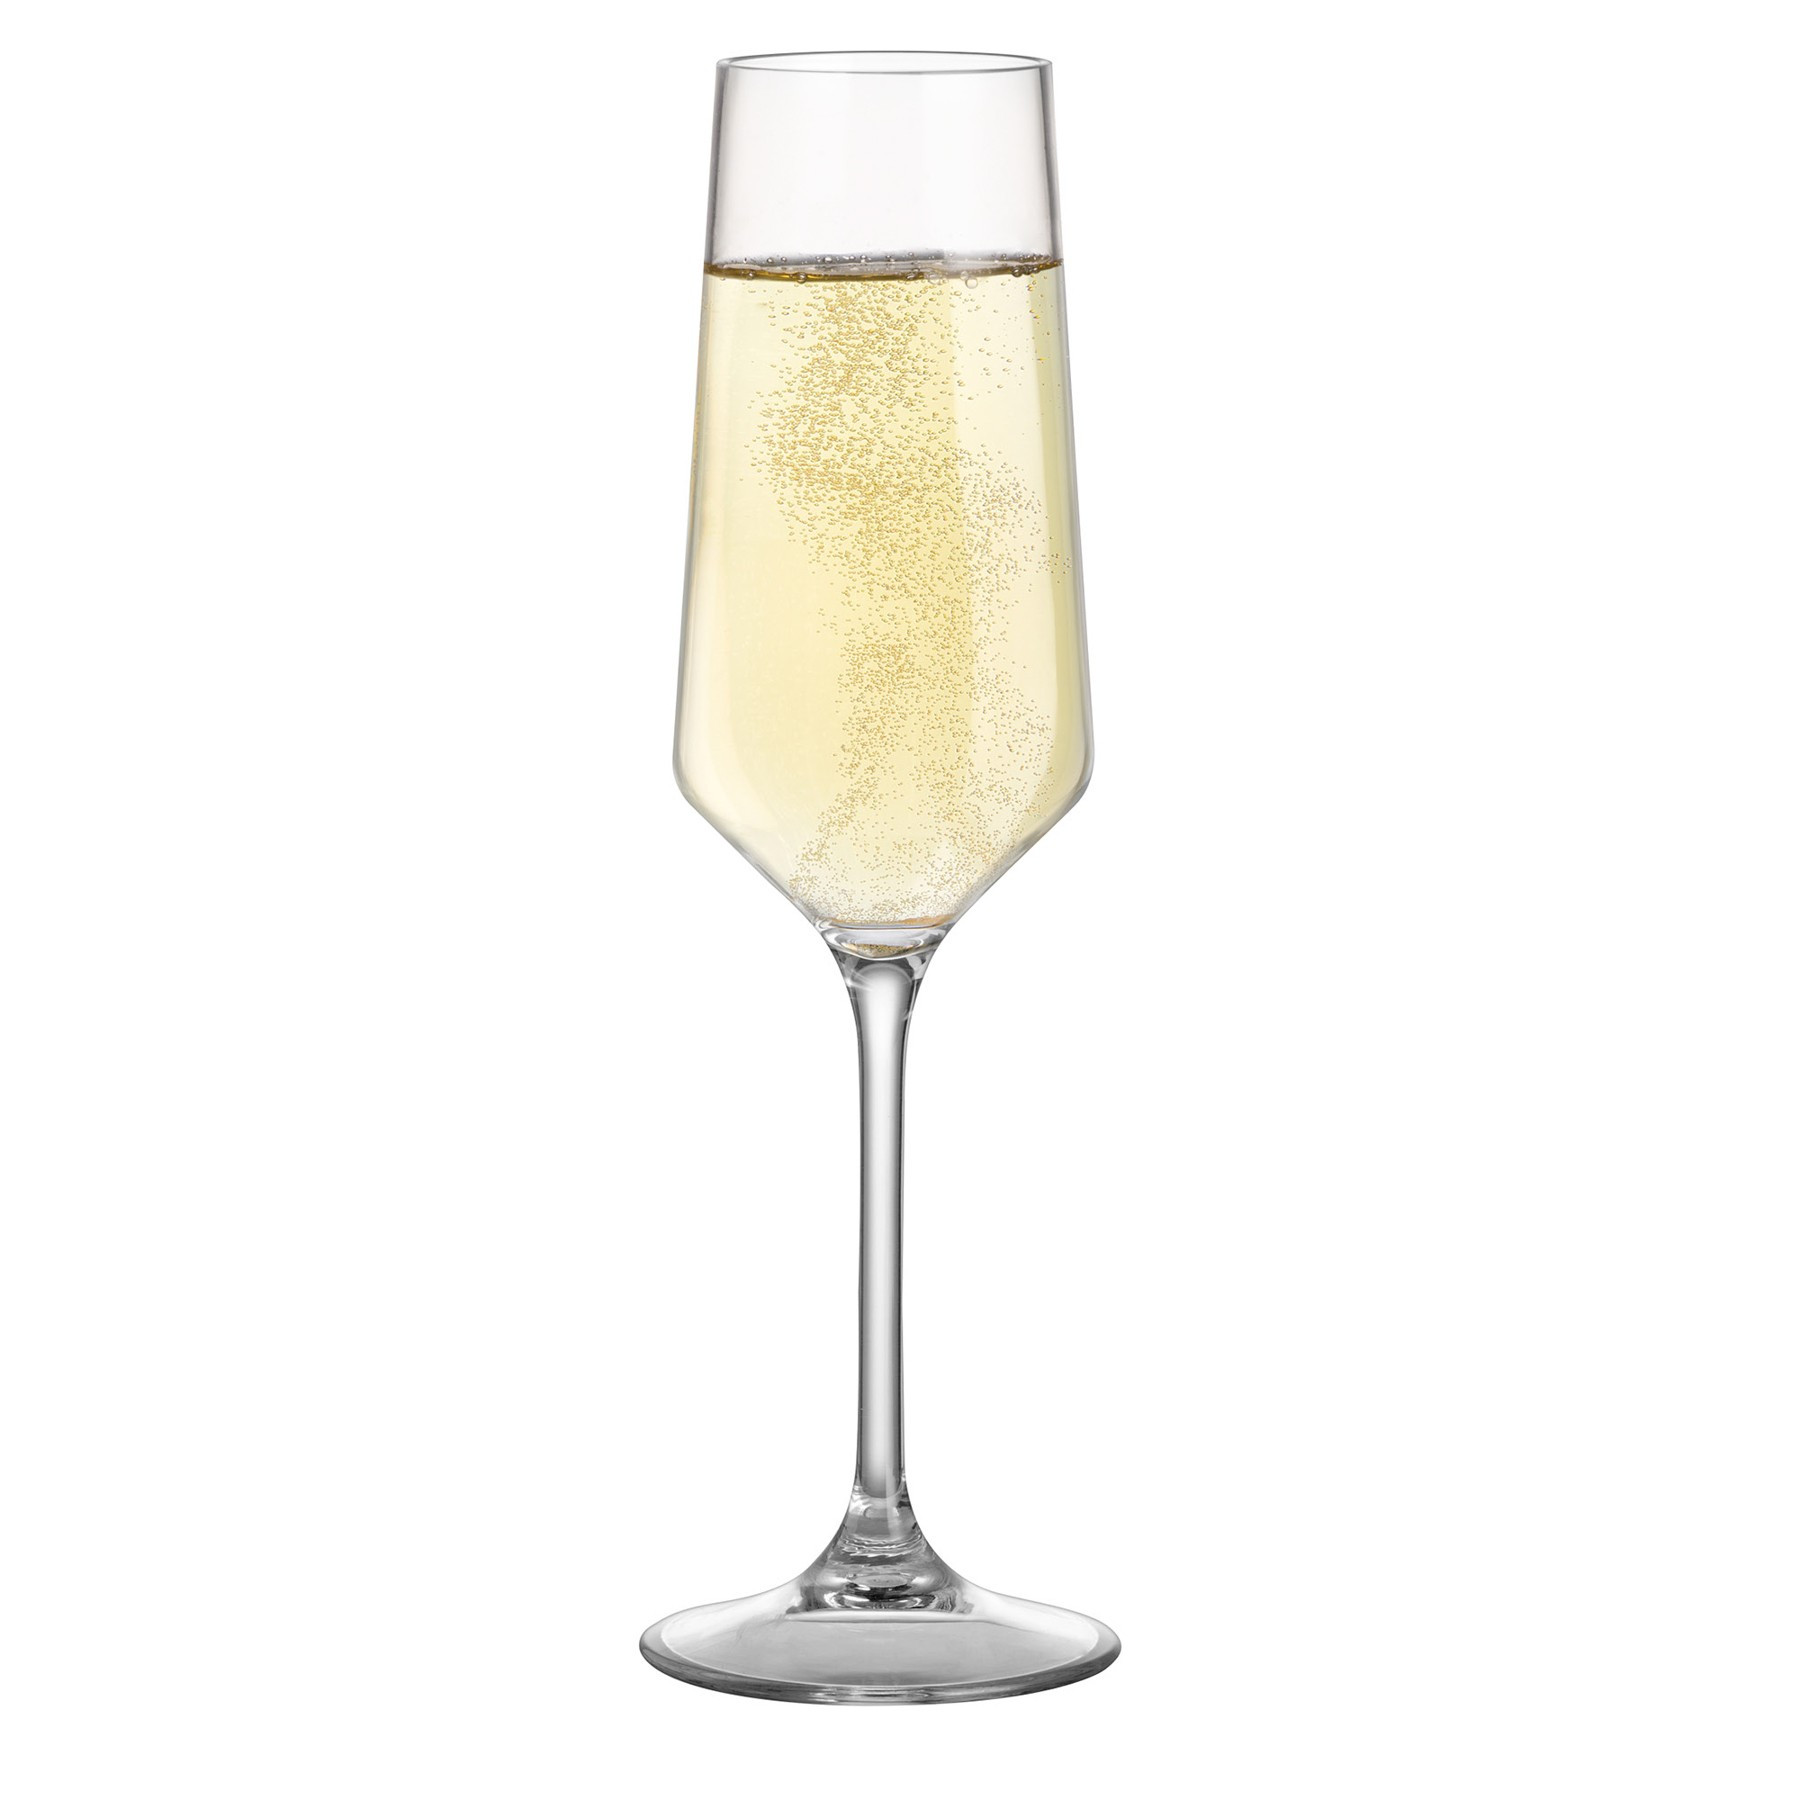 Bicchieri Tritan Prosecco Glass Riserva (2 pz) - 0830217N.C71